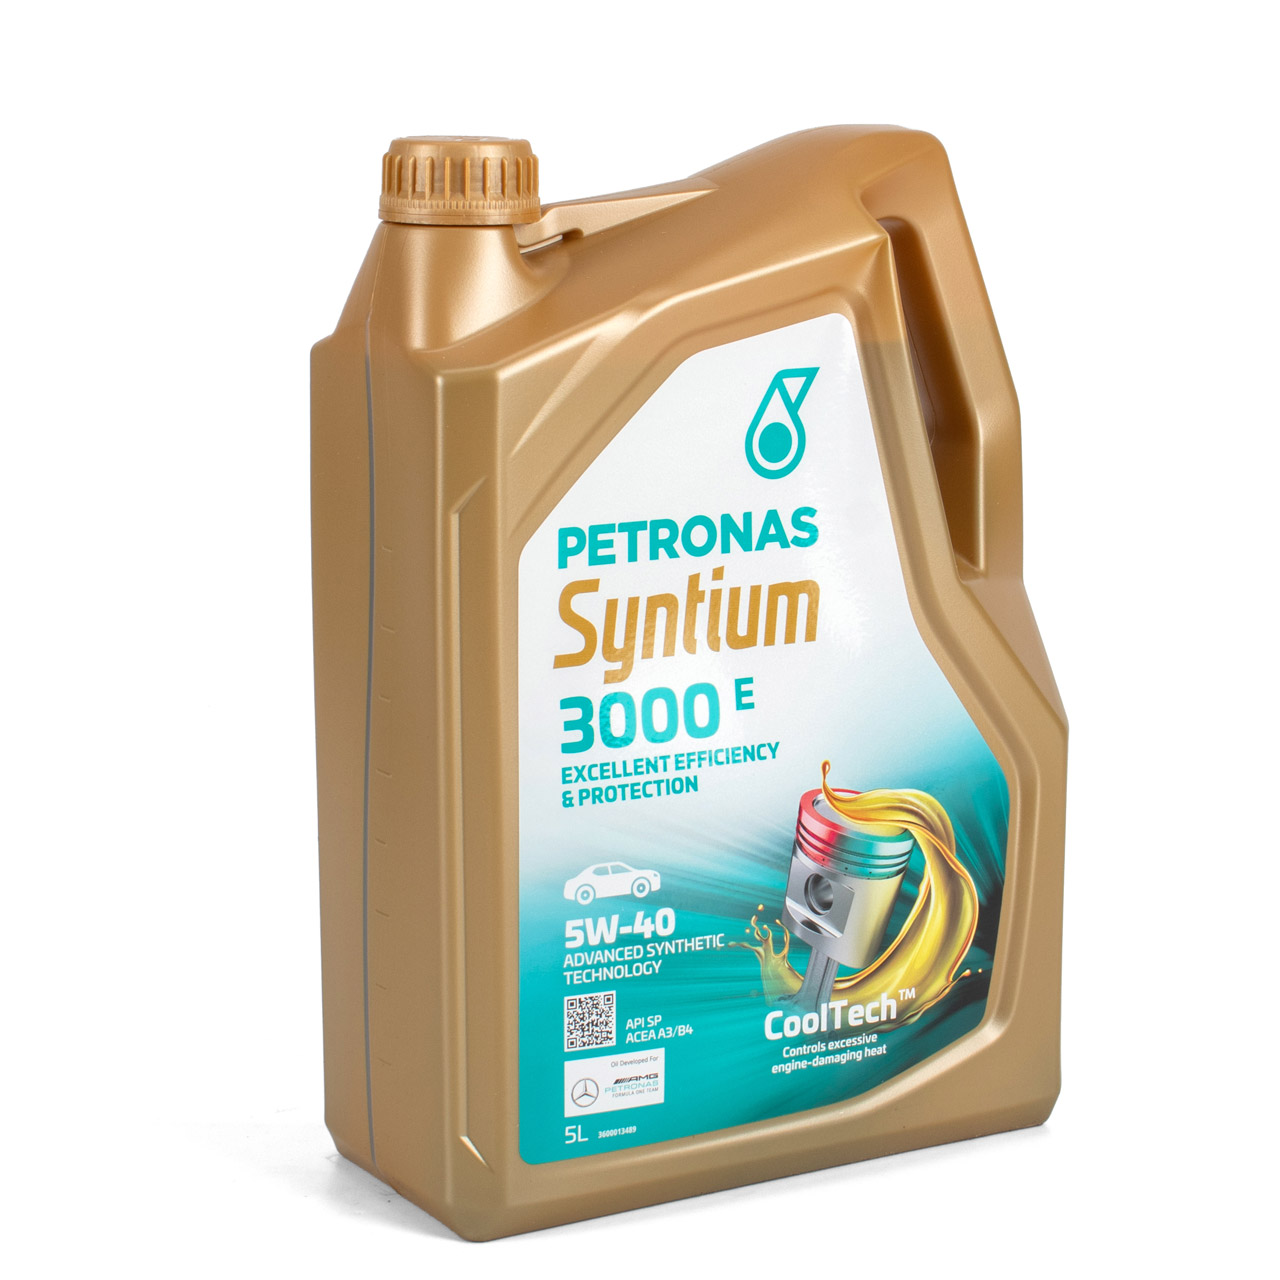 6L 6 Liter PETRONAS Syntium 3000 E 5W-40 Motoröl Öl BMW LL-01 MB 229.5 VW 502/505.00